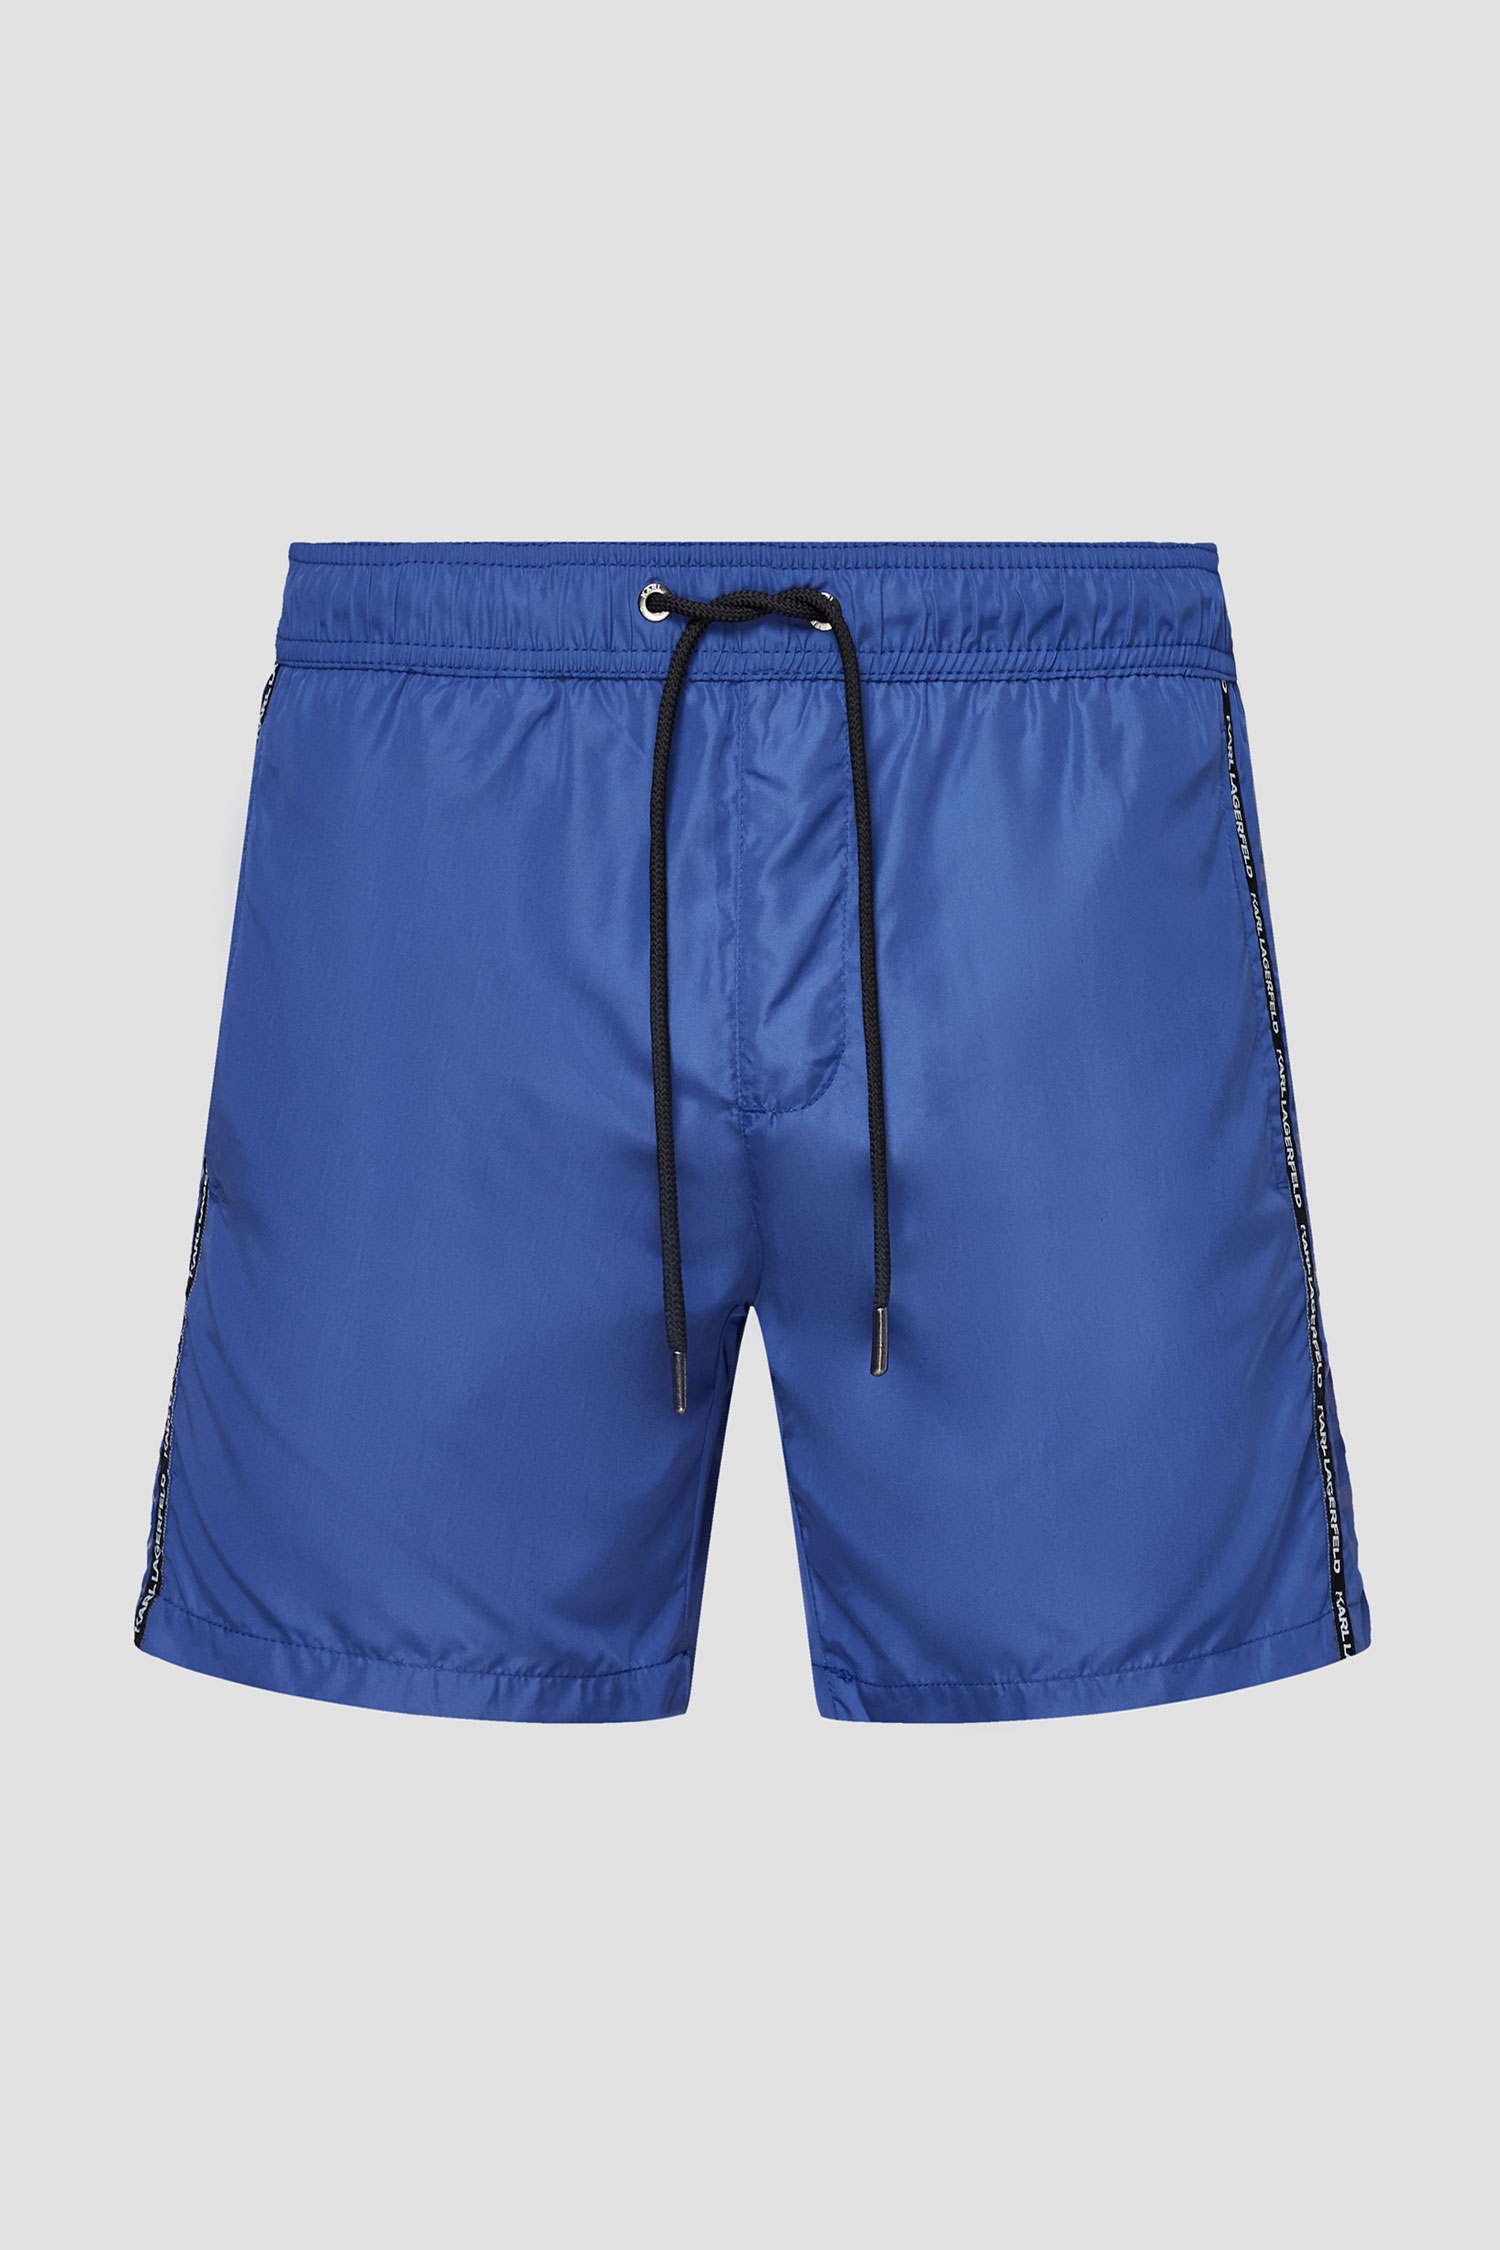 Сині плавальні шорти для хлопців Karl Lagerfeld KL21MBM03;NAVY